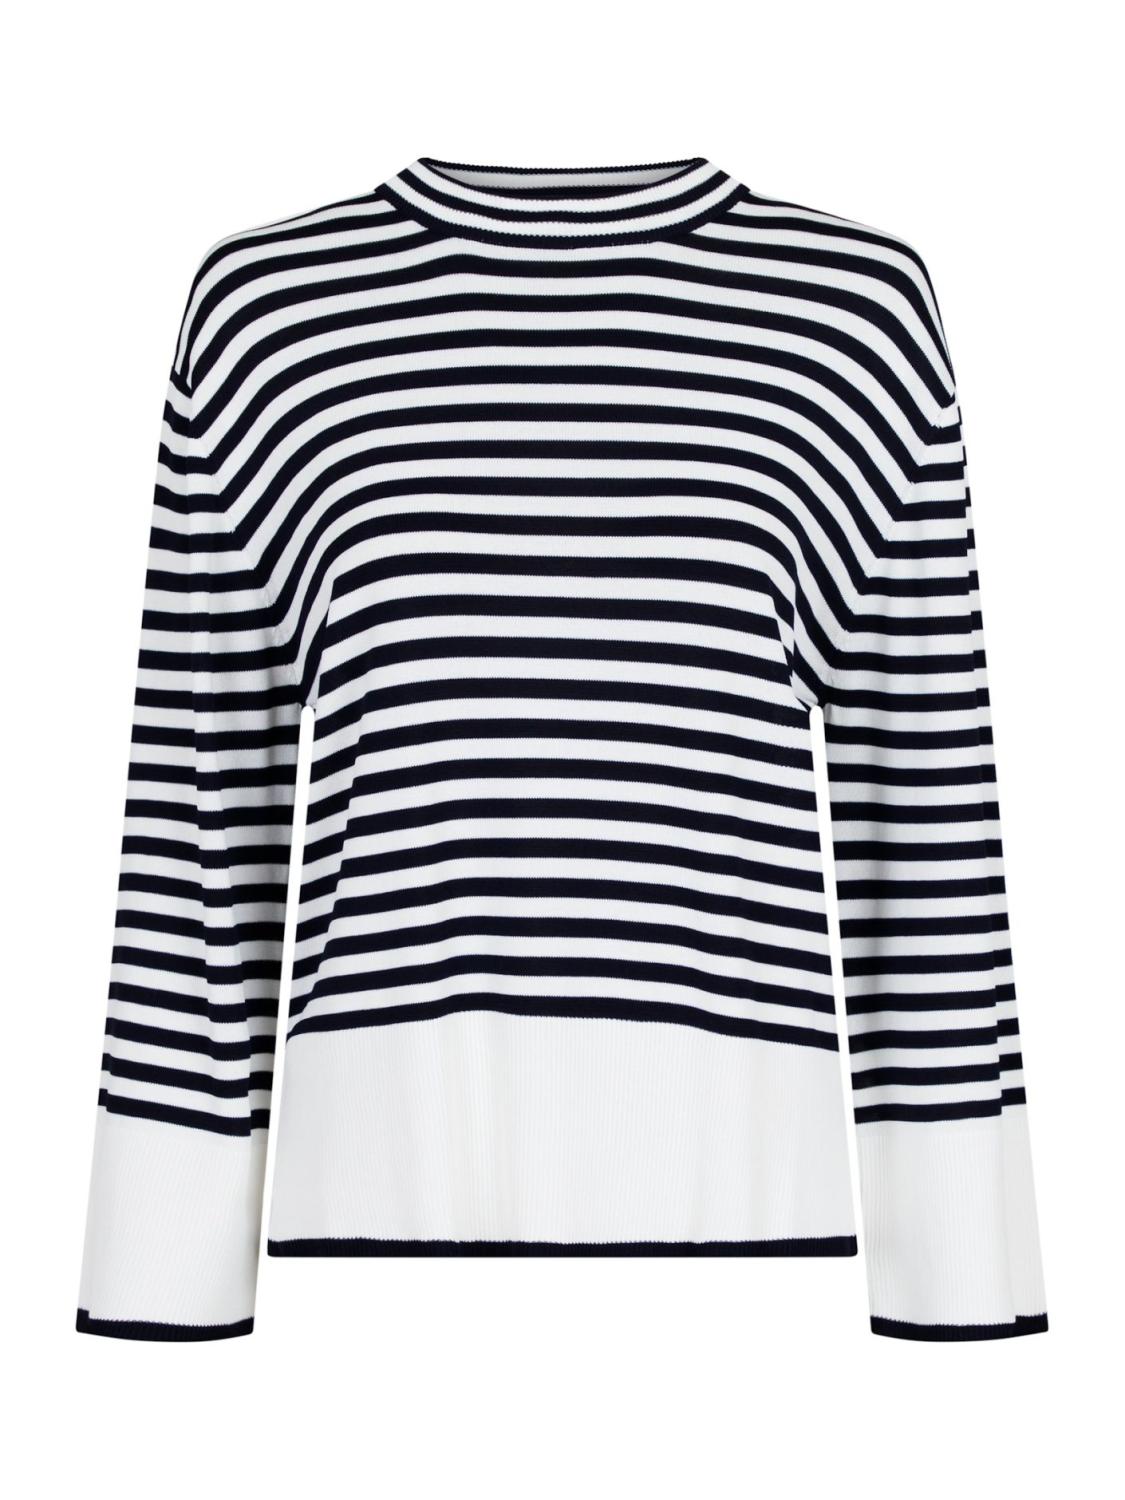 Enya Stripe Knit Blouse Offwhite/Navy